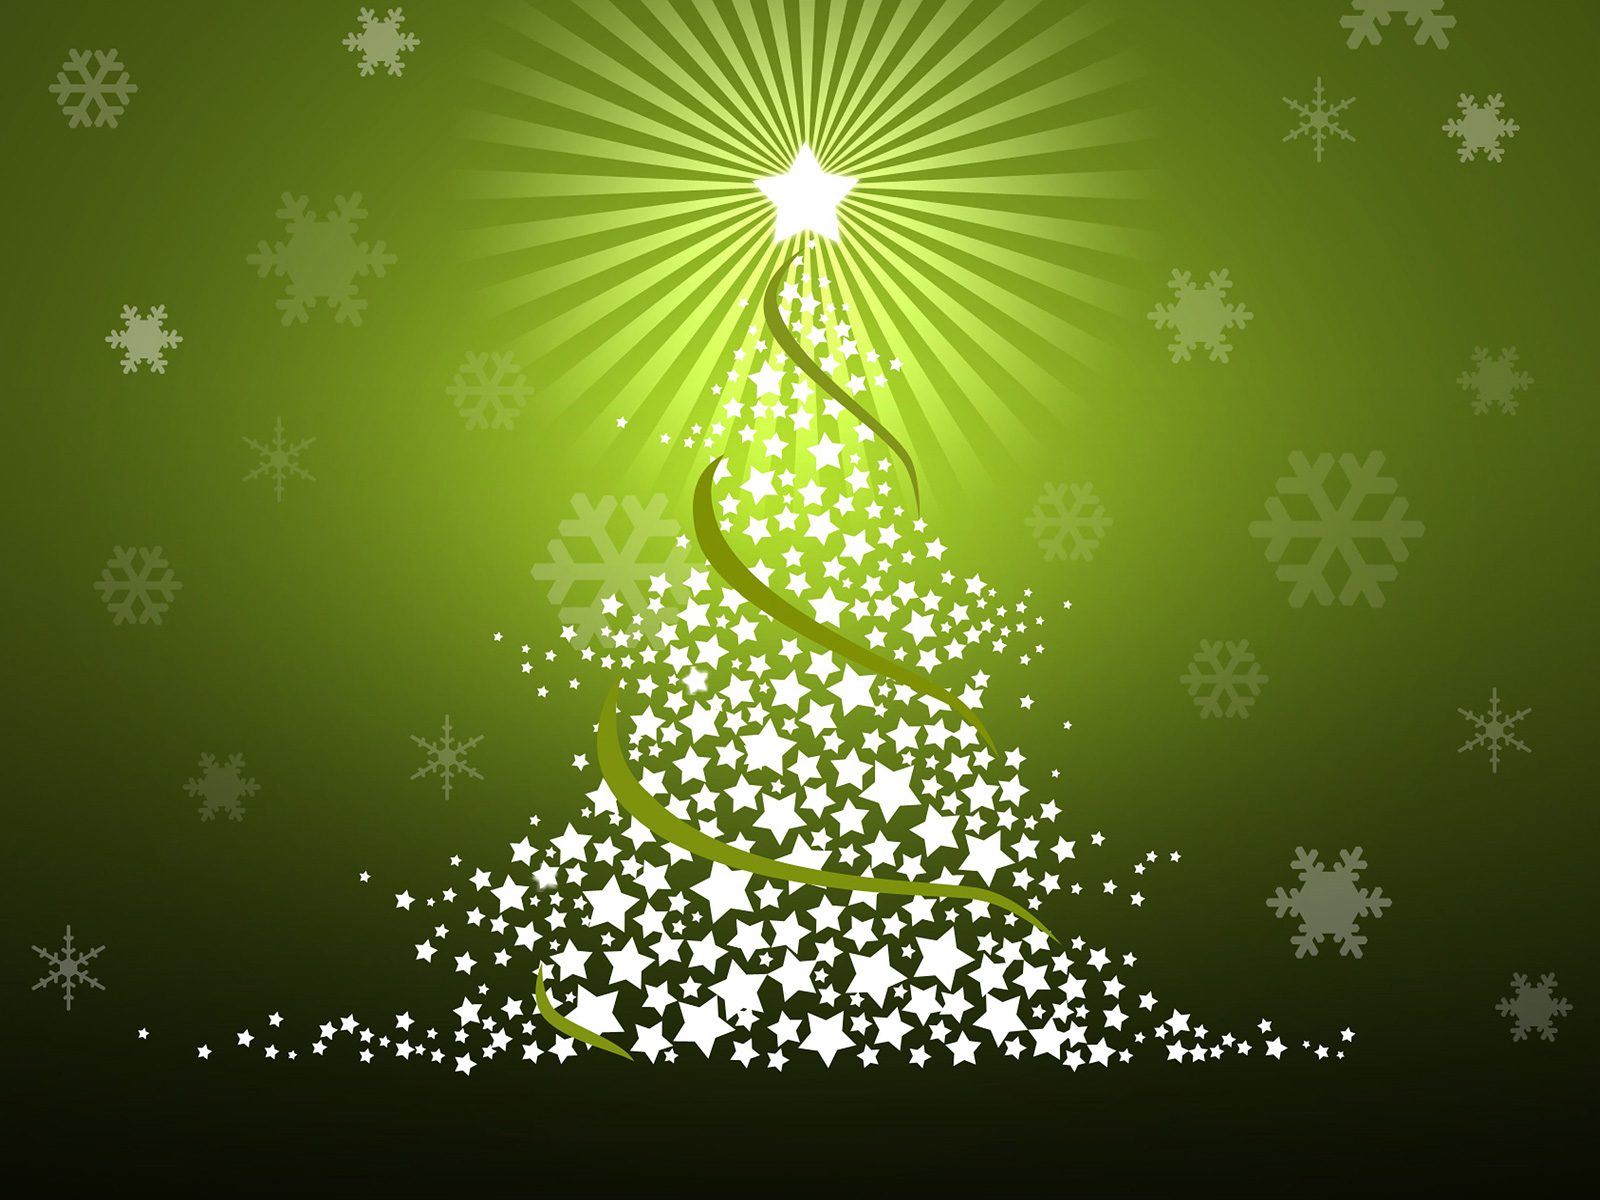 http://4.bp.blogspot.com/_SixGnPCE7fY/TRVqUI_kx0I/AAAAAAAAD10/35sMKXnBdbc/s1600/Christmas_Tree.jpg